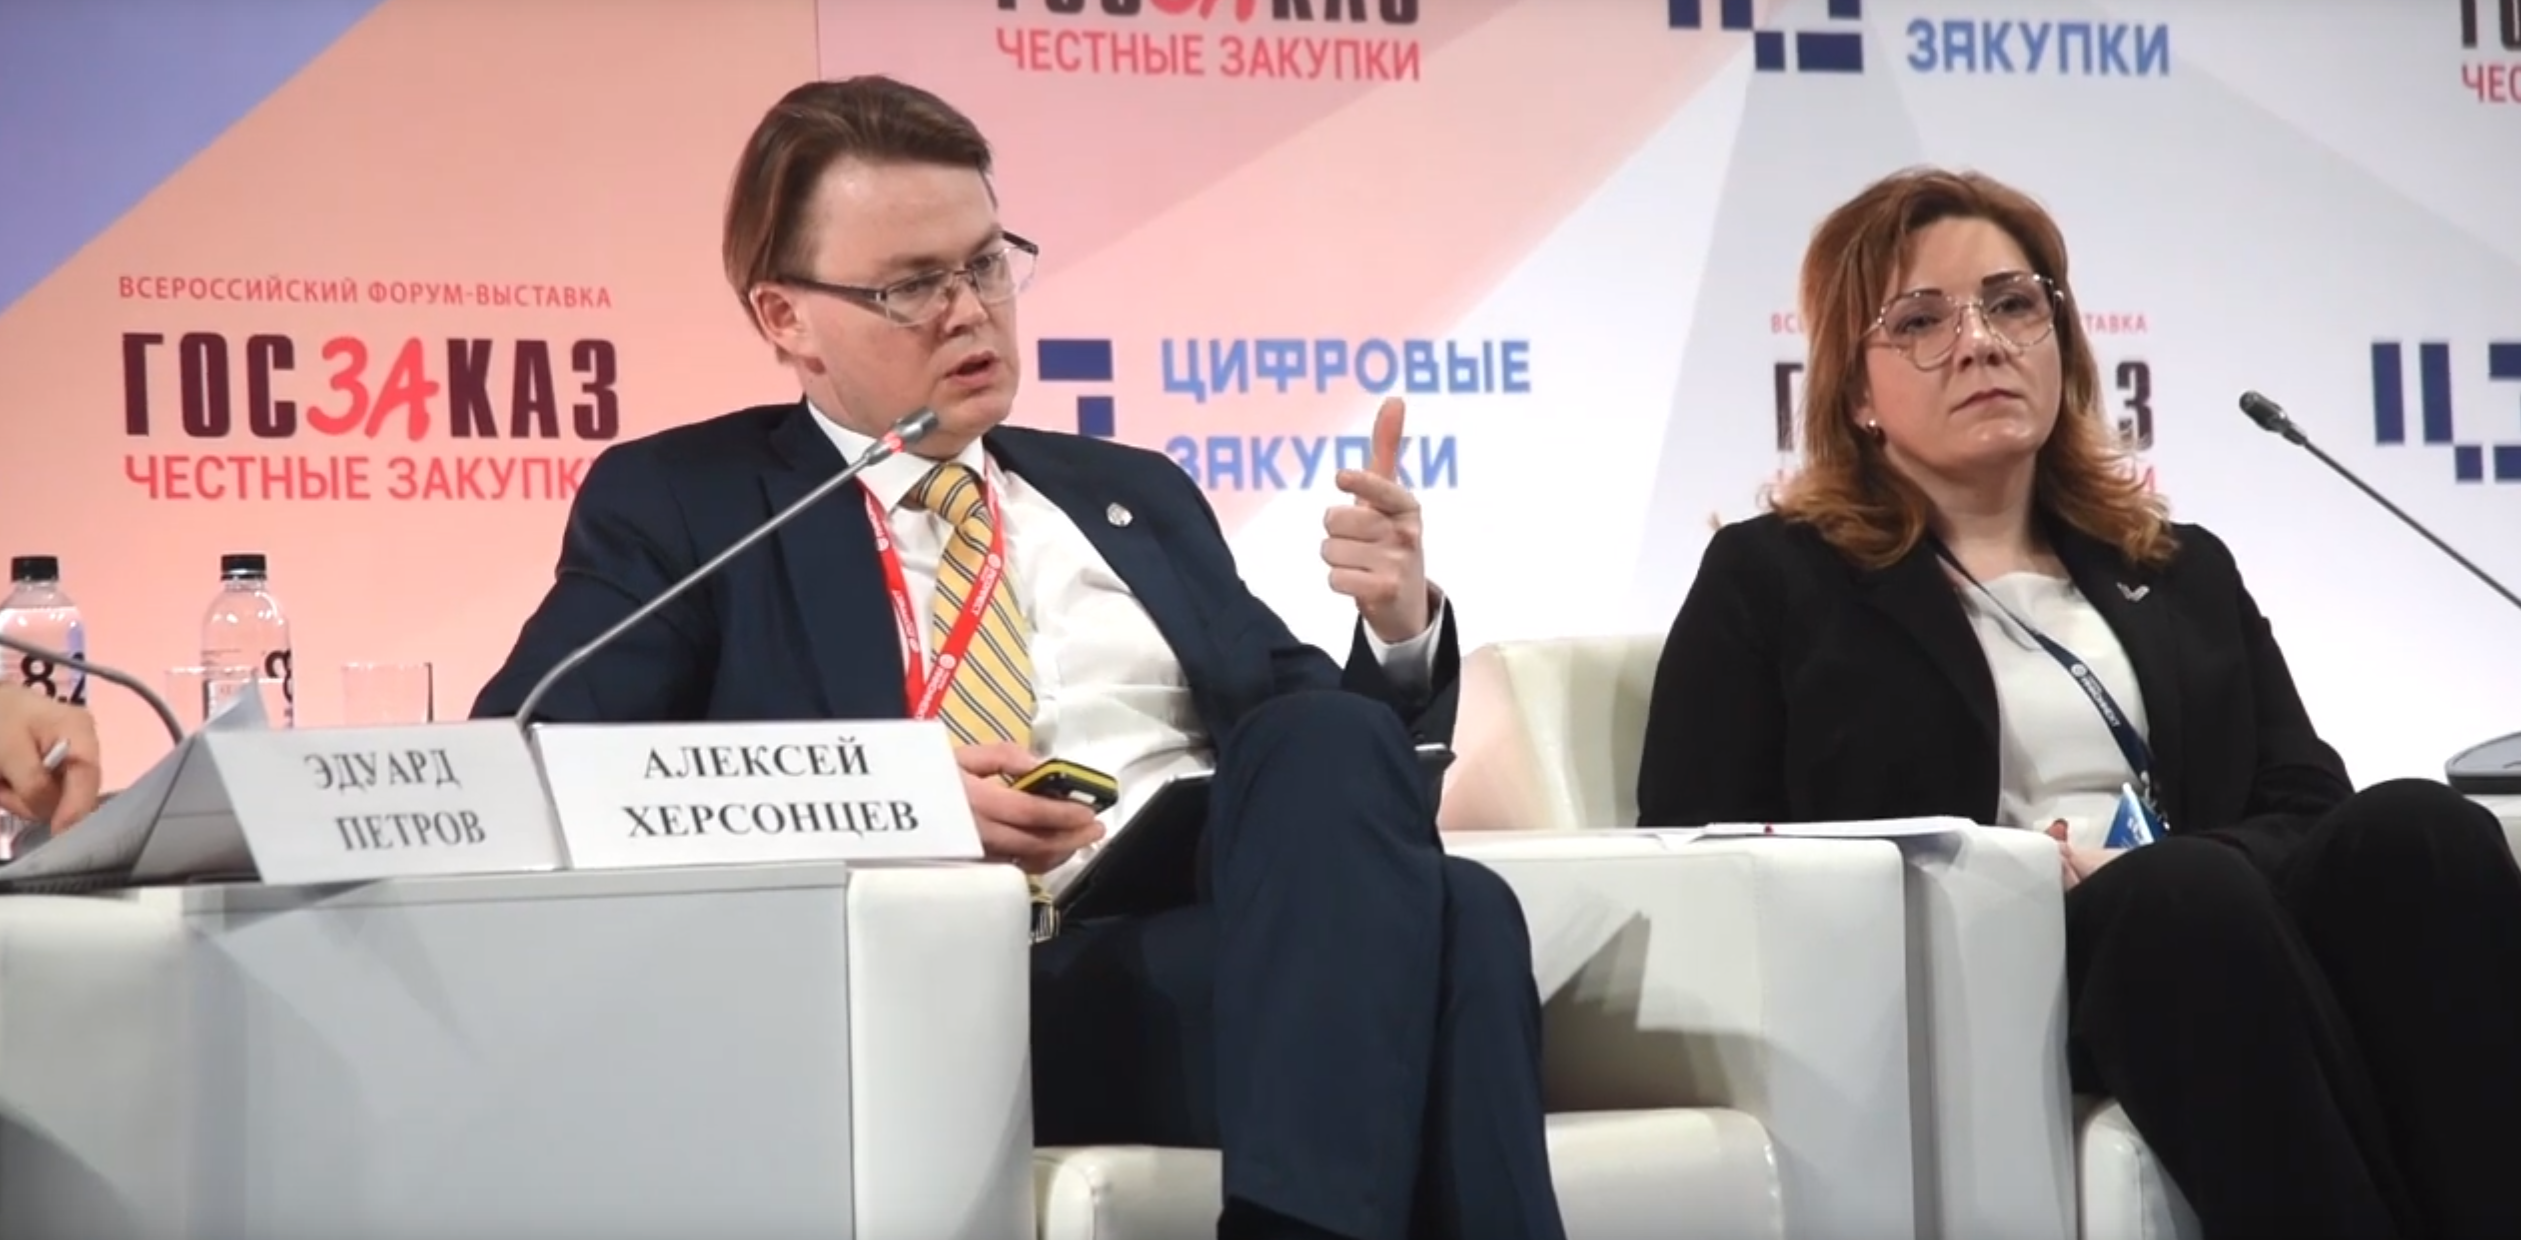 Выступление Алексея Херсонцева на форуме «ГОСЗАКАЗ-2019»